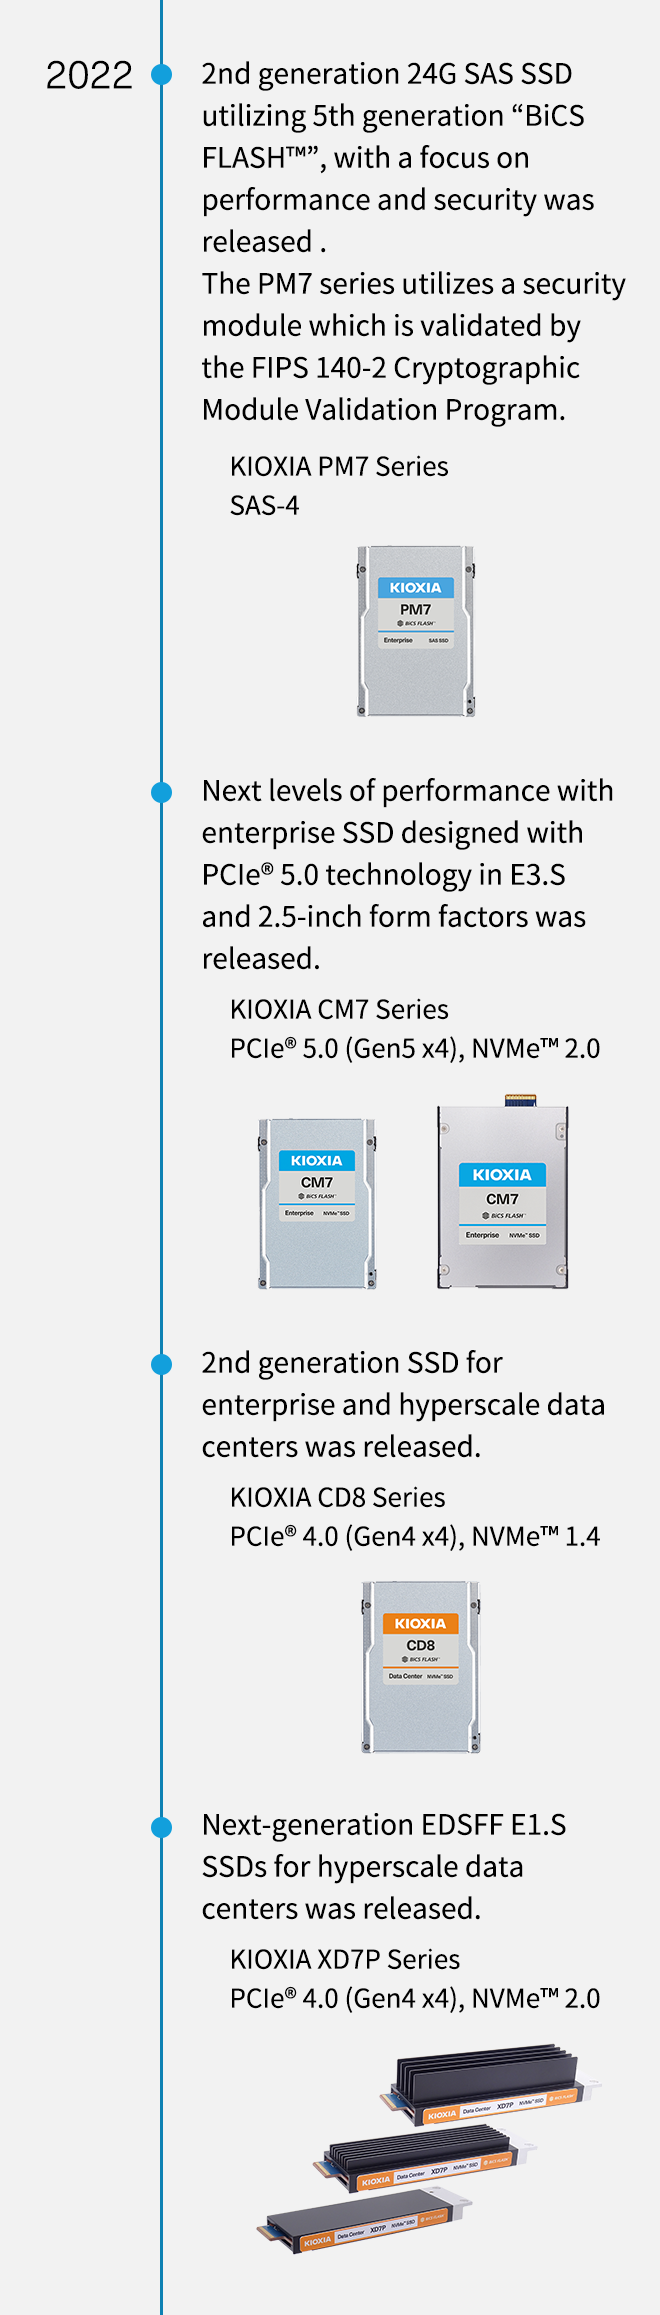 2022. 24G SAS SSD der 2. Generation mit der 5. Generation von „BiCS FLASH™“ mit Schwerpunkt auf Leistung und Sicherheit wurde veröffentlicht. Die PM7-Serie verwendet ein Sicherheitsmodul, das durch das FIPS 140-2 Cryptographic Module Validation Program validiert wird. KIOXIA PM7-Serie SAS-4. Die nächste Leistungsstufe mit Enterprise SSD, die mit PCIe® 5.0-Technologie in E3.S- und 2,5-Zoll-Formfaktoren entwickelt wurde, wurde veröffentlicht. KIOXIA CM7-Serie PCIe® 5.0 (Gen5 x4), NVMe™ 2.0. SSD der 2. Generation für Unternehmens- und Hyperscale-Rechenzentren wurde veröffentlicht. KIOXIA CD8-Serie PCIe® 4.0 (Gen4 x4), NVMe™ 1.4. KIOXIA kündigt EDSFF E1.S-SSDs der nächsten Generation für Hyperscale-Rechenzentren an. KIOXIA XD7P-Serie PCIe® 4.0 (Gen4 x4), NVMe™ 2.0